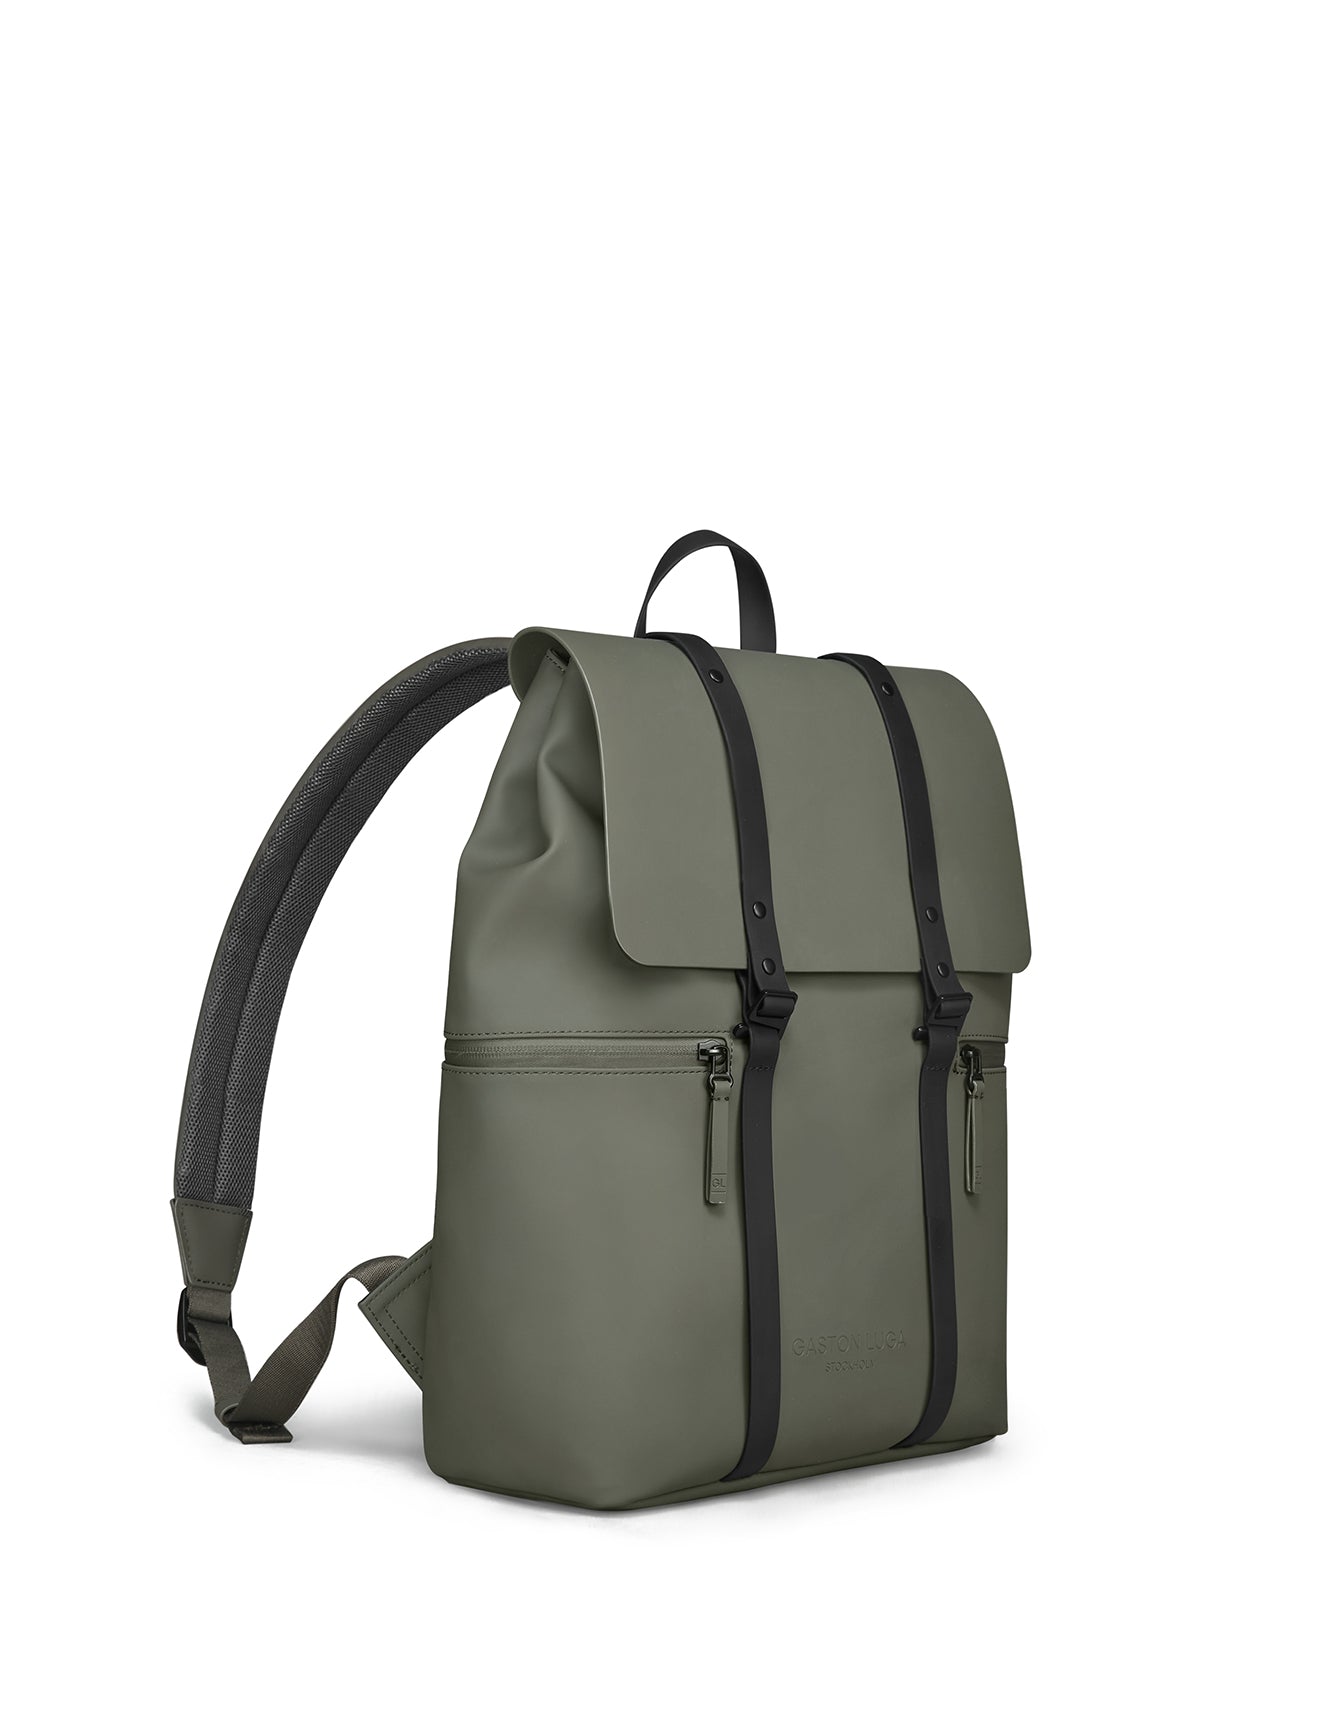 Gaston Luga - Splash 2.0 13" Backpack 14.25L - Olive